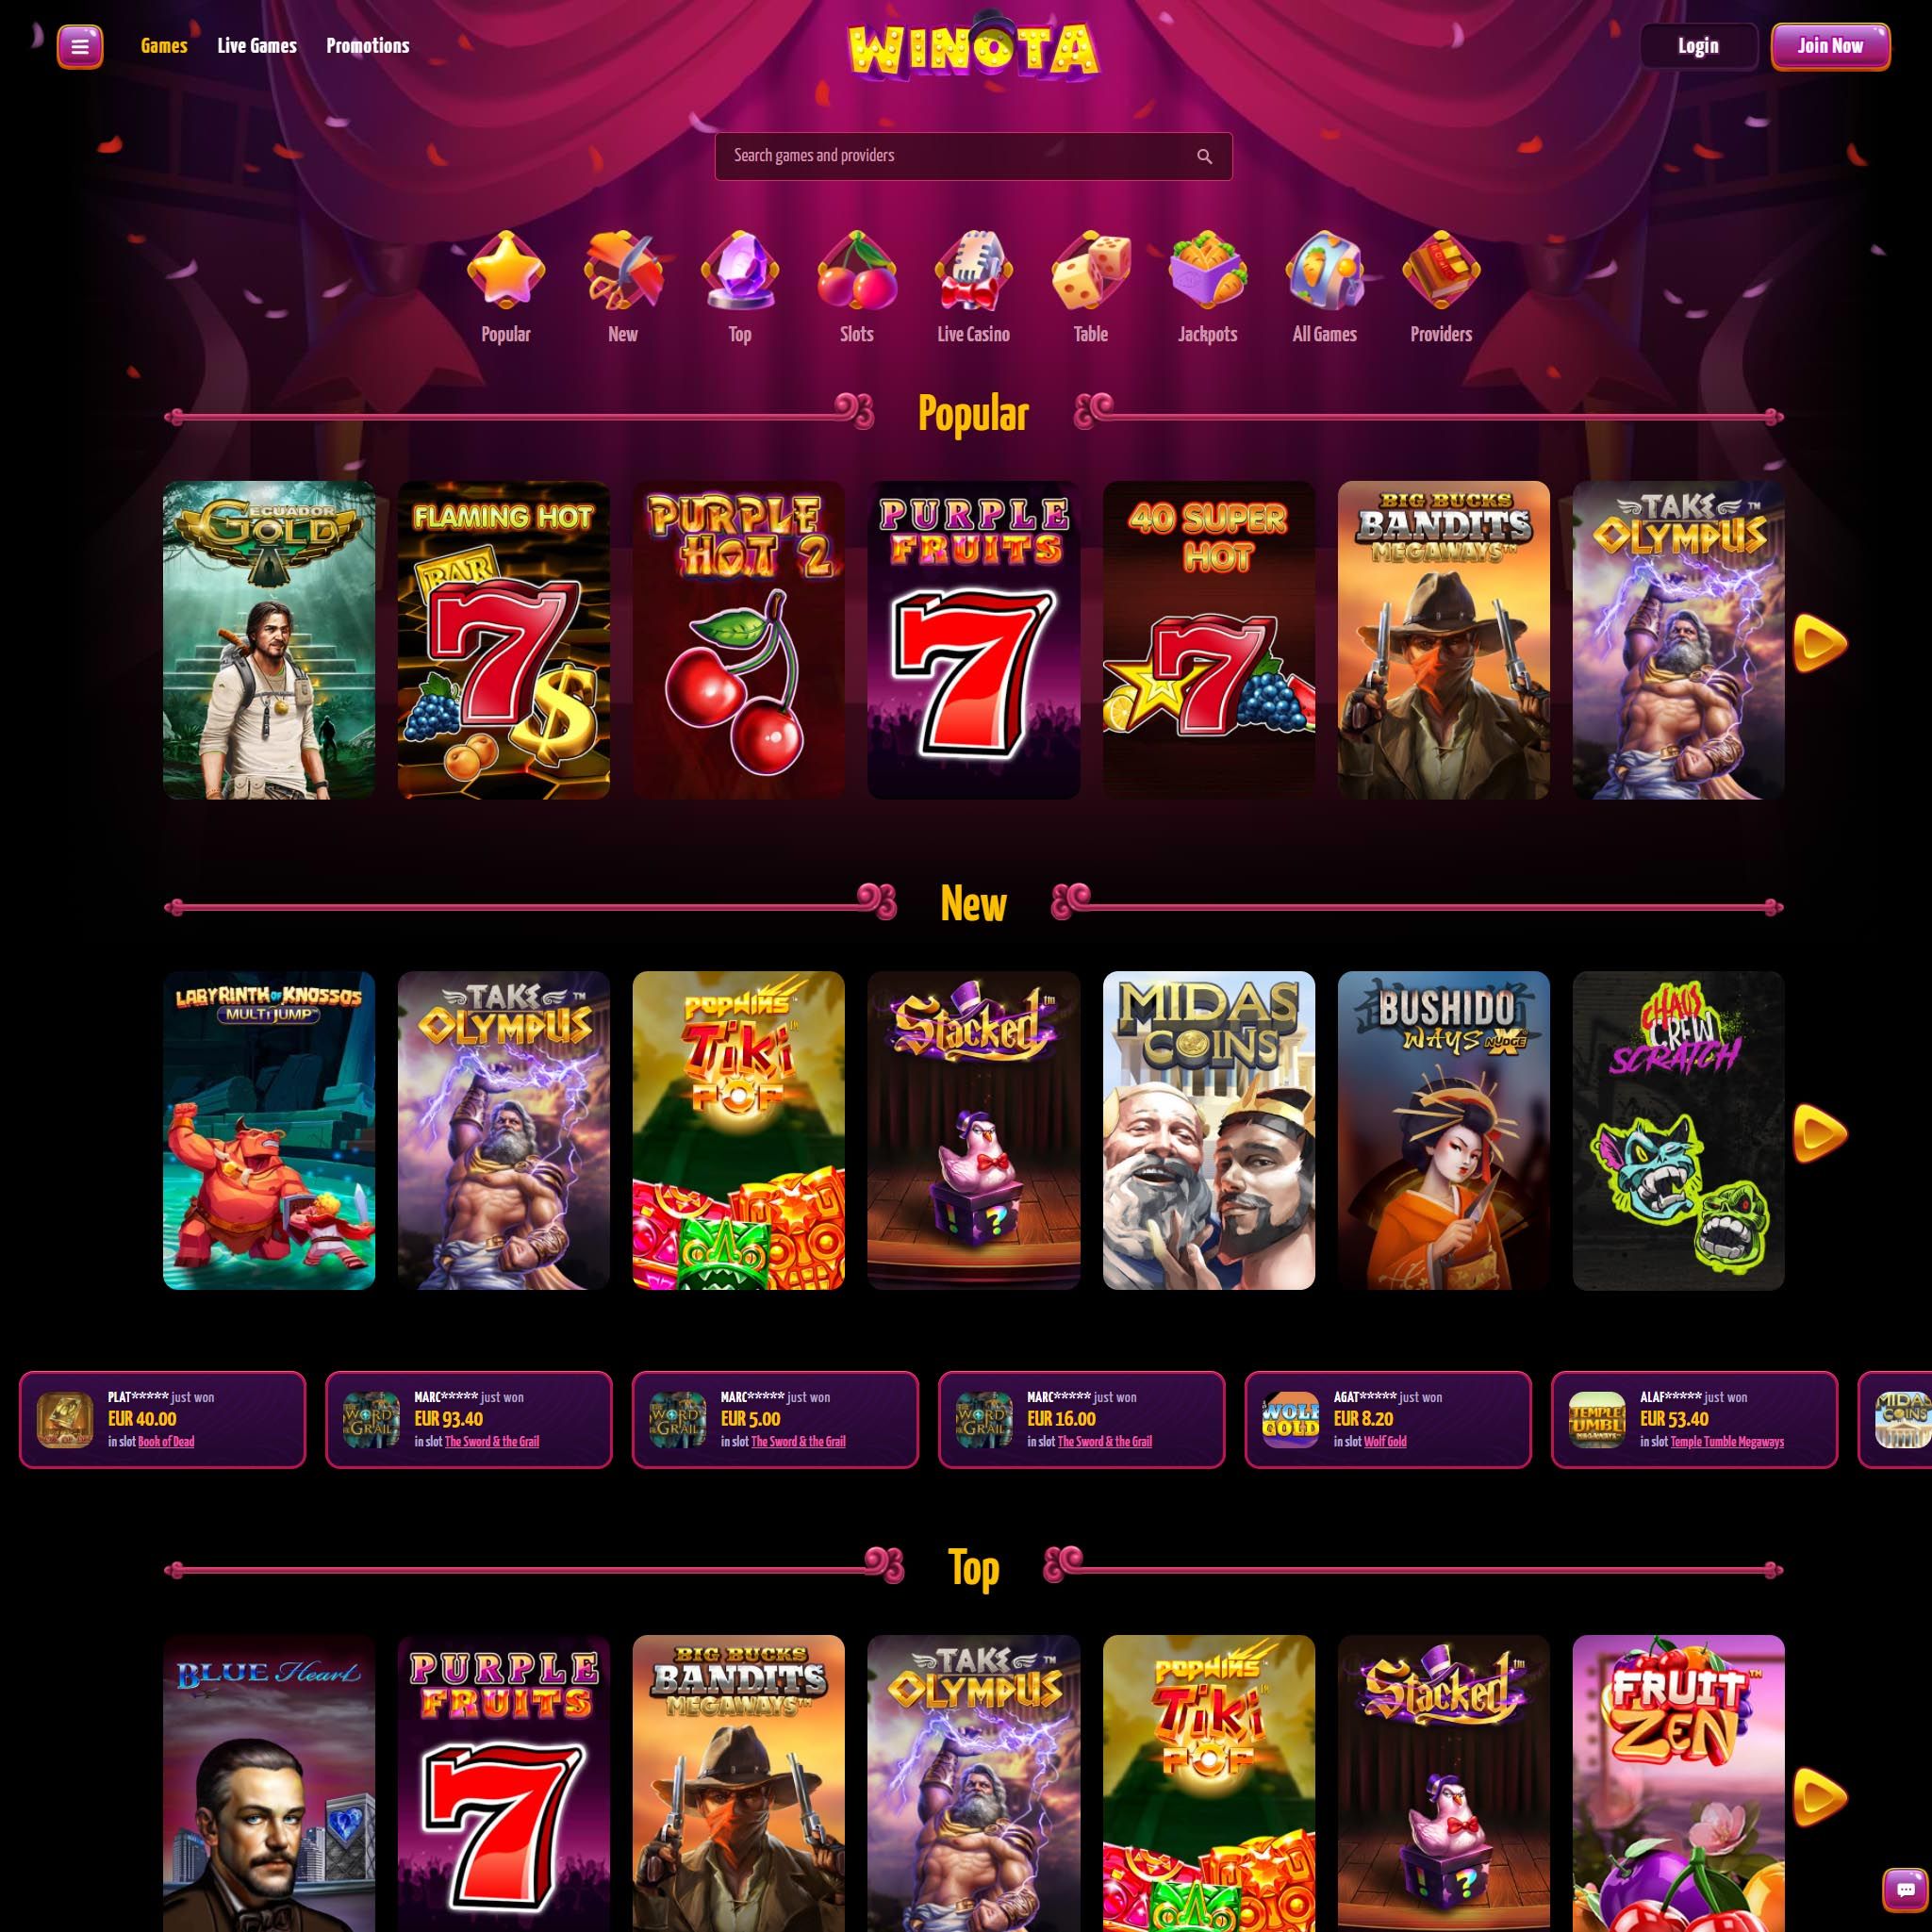 Winota Casino full games catalogue